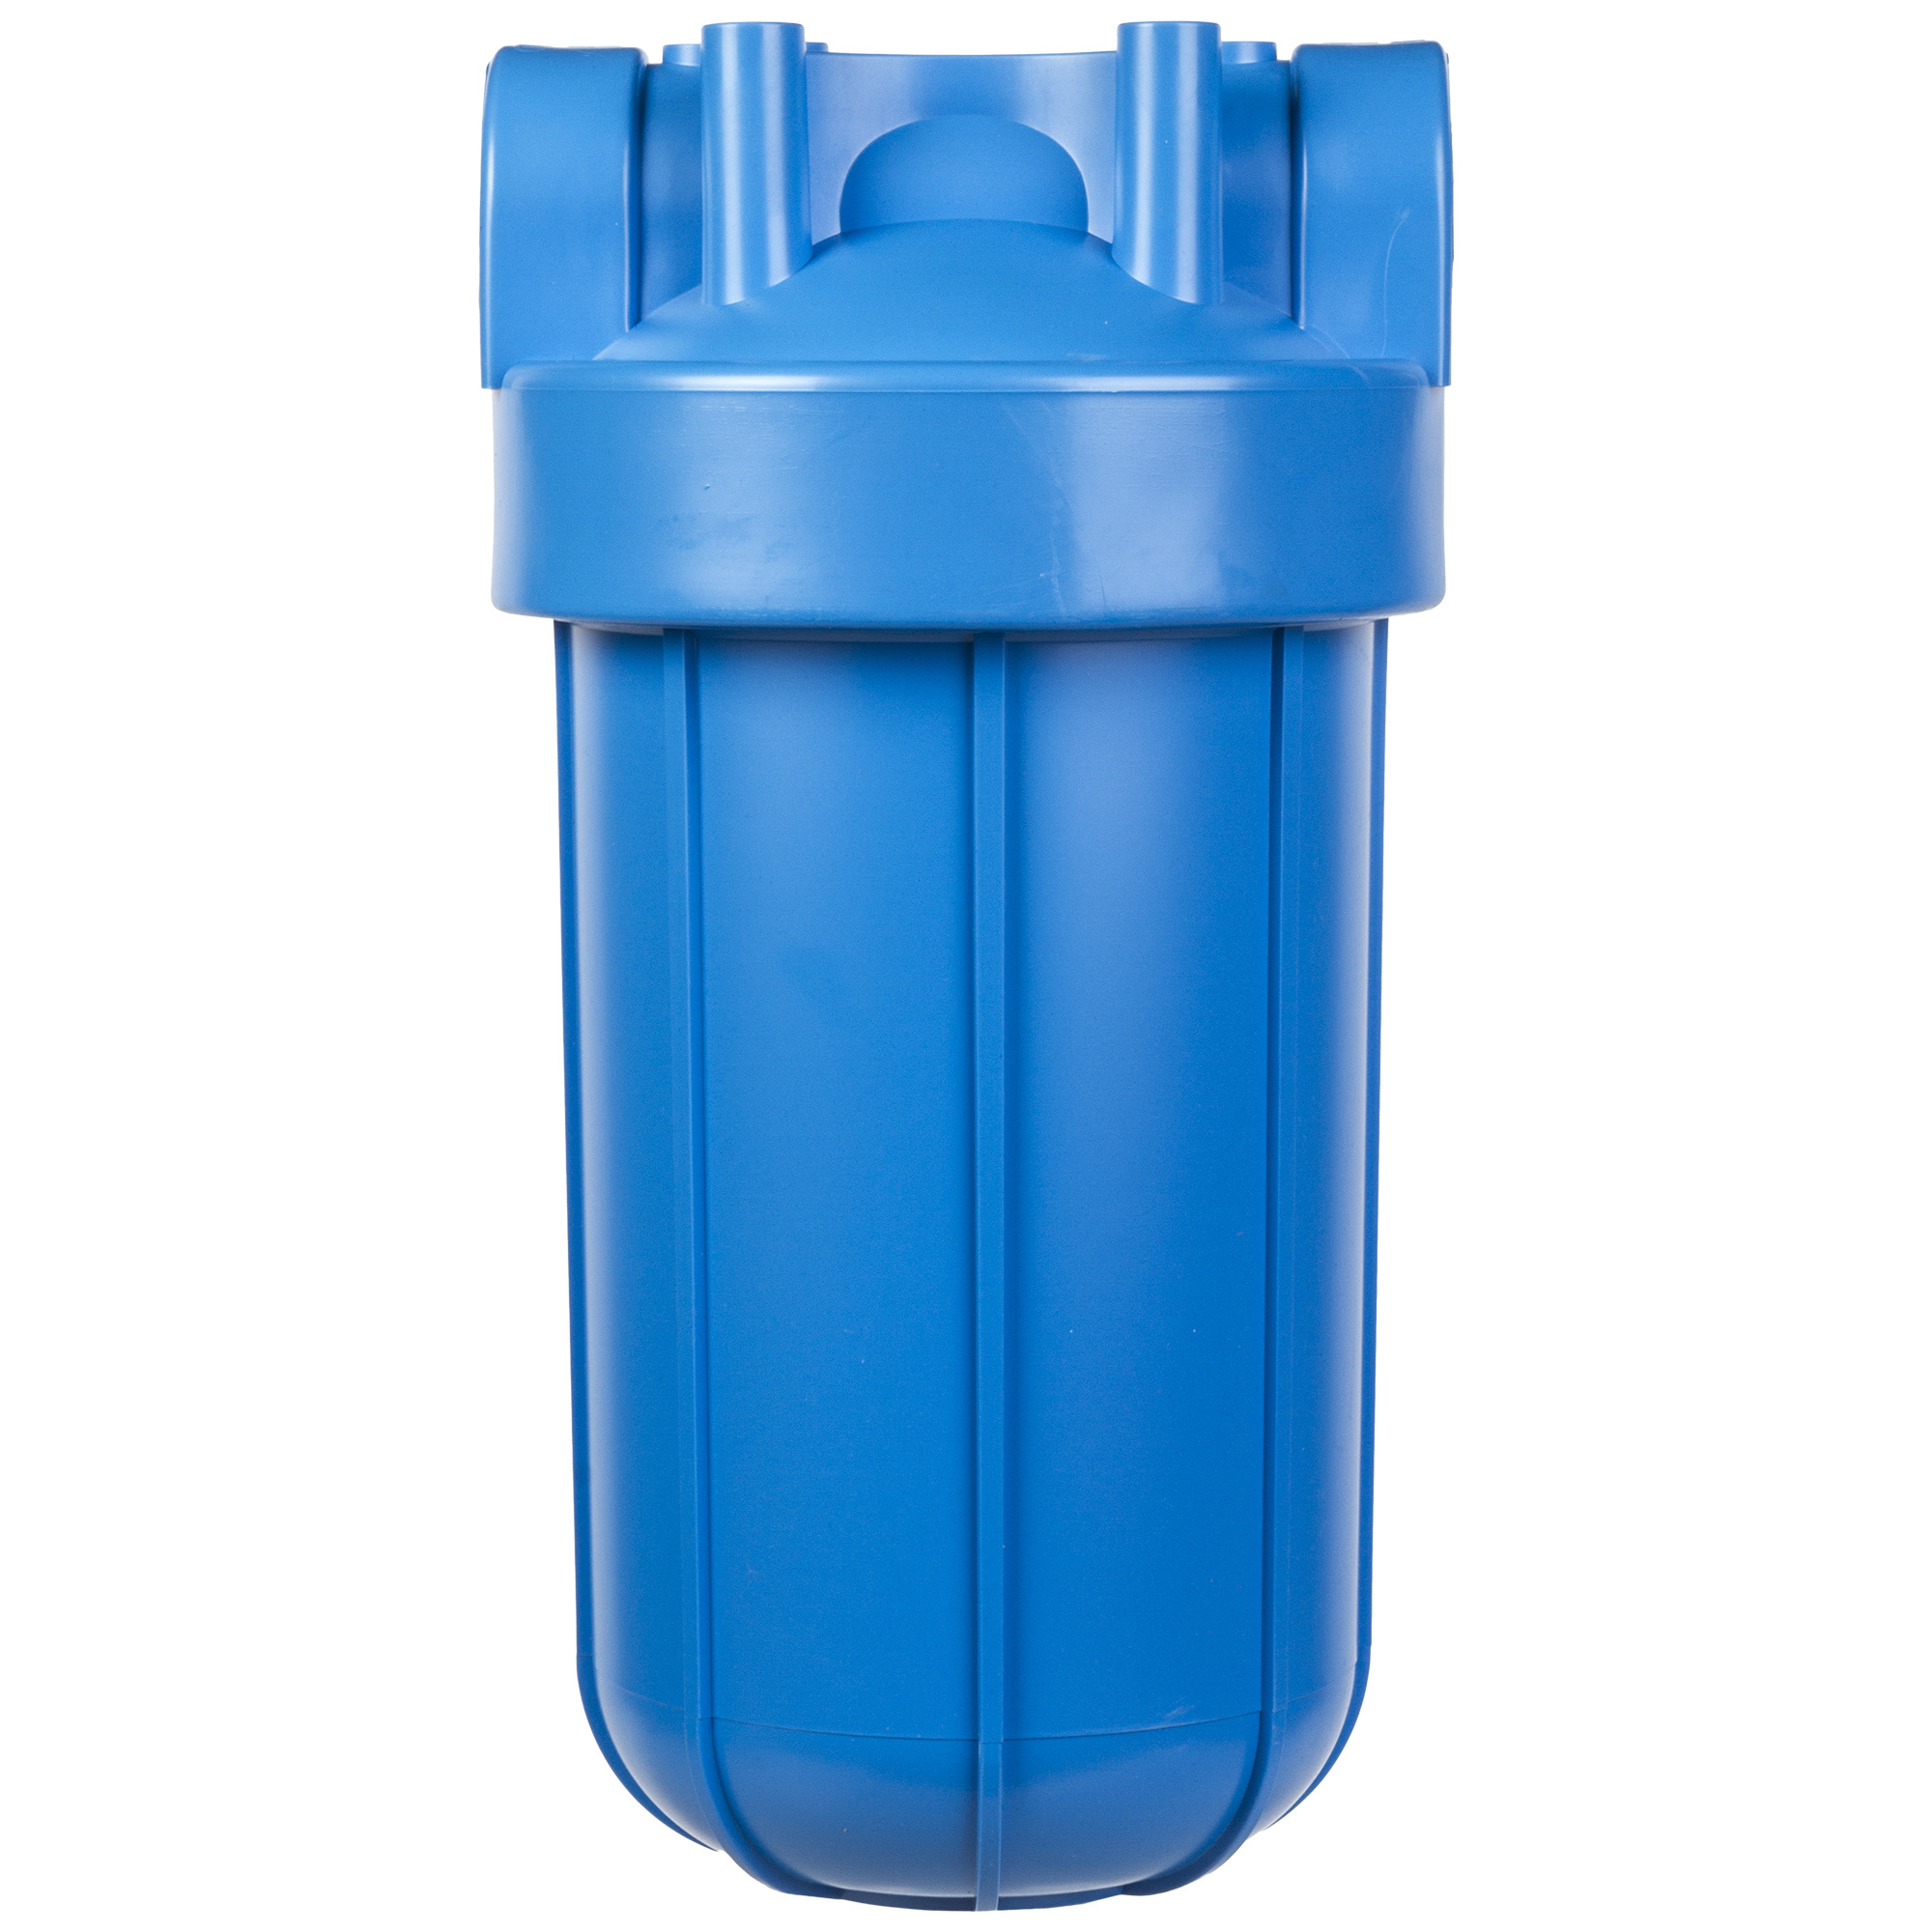 Фильтры очистки леруа мерлен. Aquafilter bb10. Фильтр магистральный 10 вв1. Магистральные фильтры для воды Aquafilter bb10. Магистральный фильтр для воды 10вв.